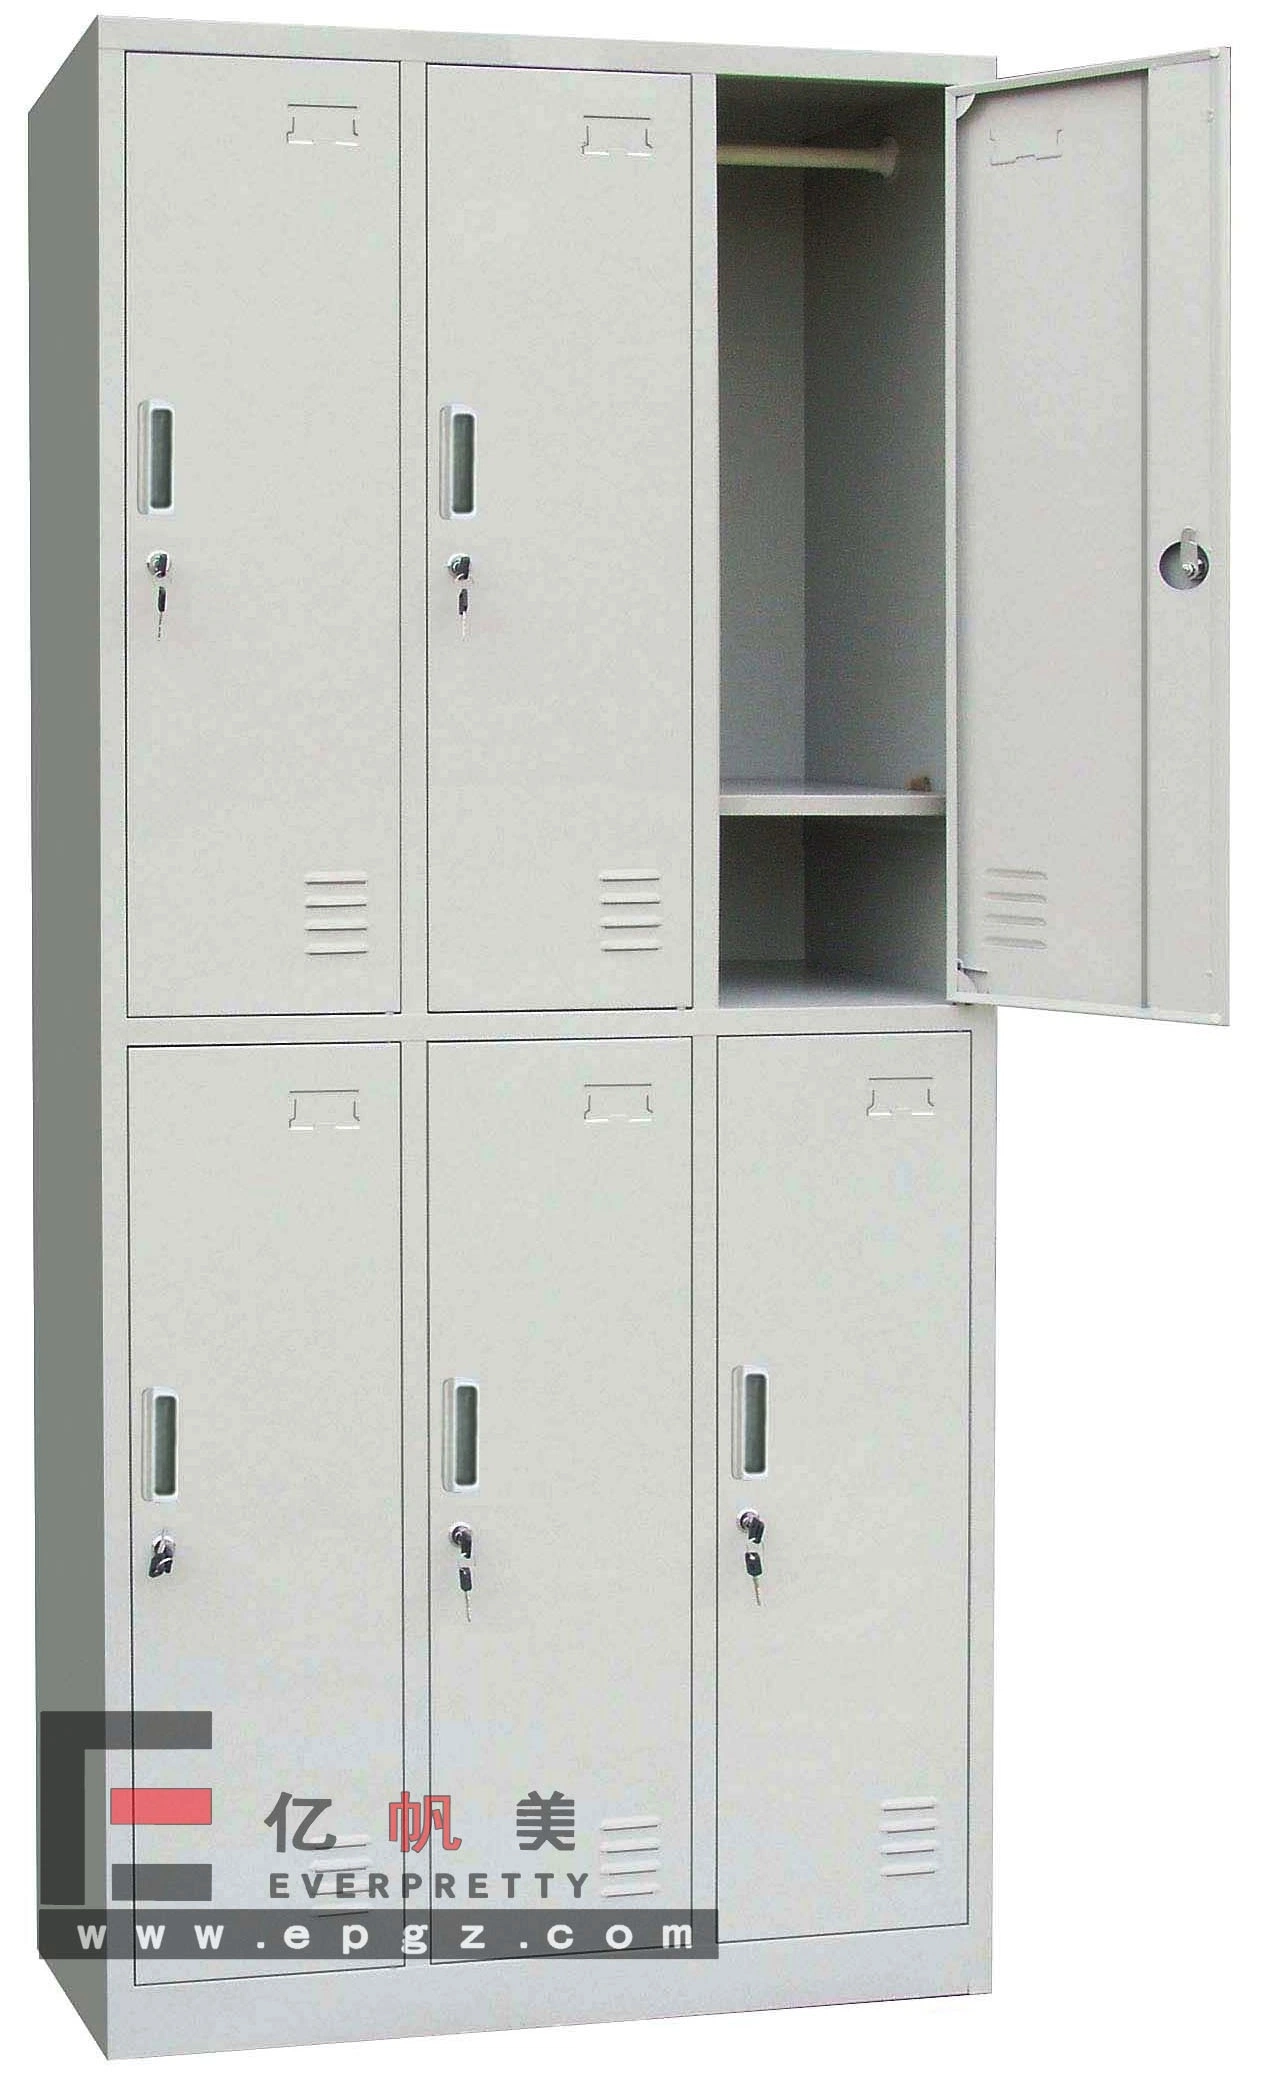 6 ДВЕРИ металлический ящик для хранения данных студентов шкафа электроавтоматики